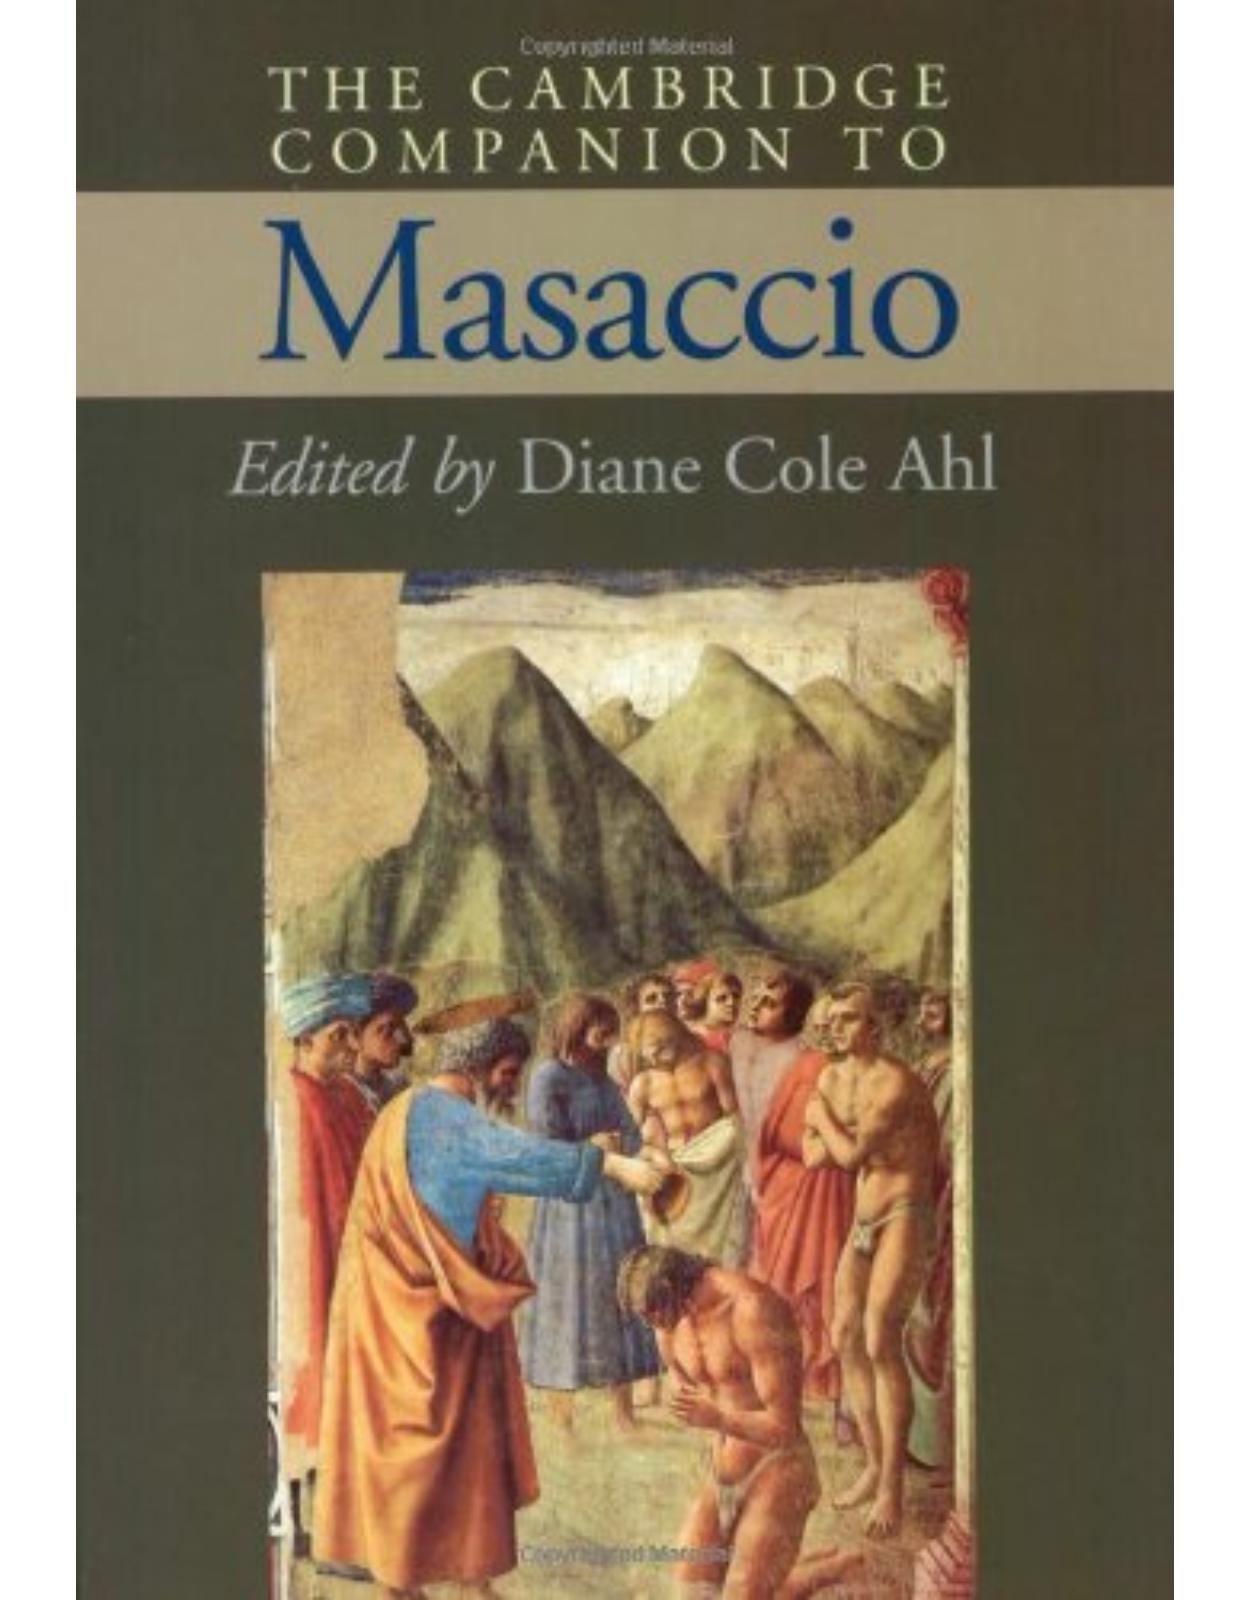 The Cambridge Companion to Masaccio (Cambridge Companions to the History of Art)